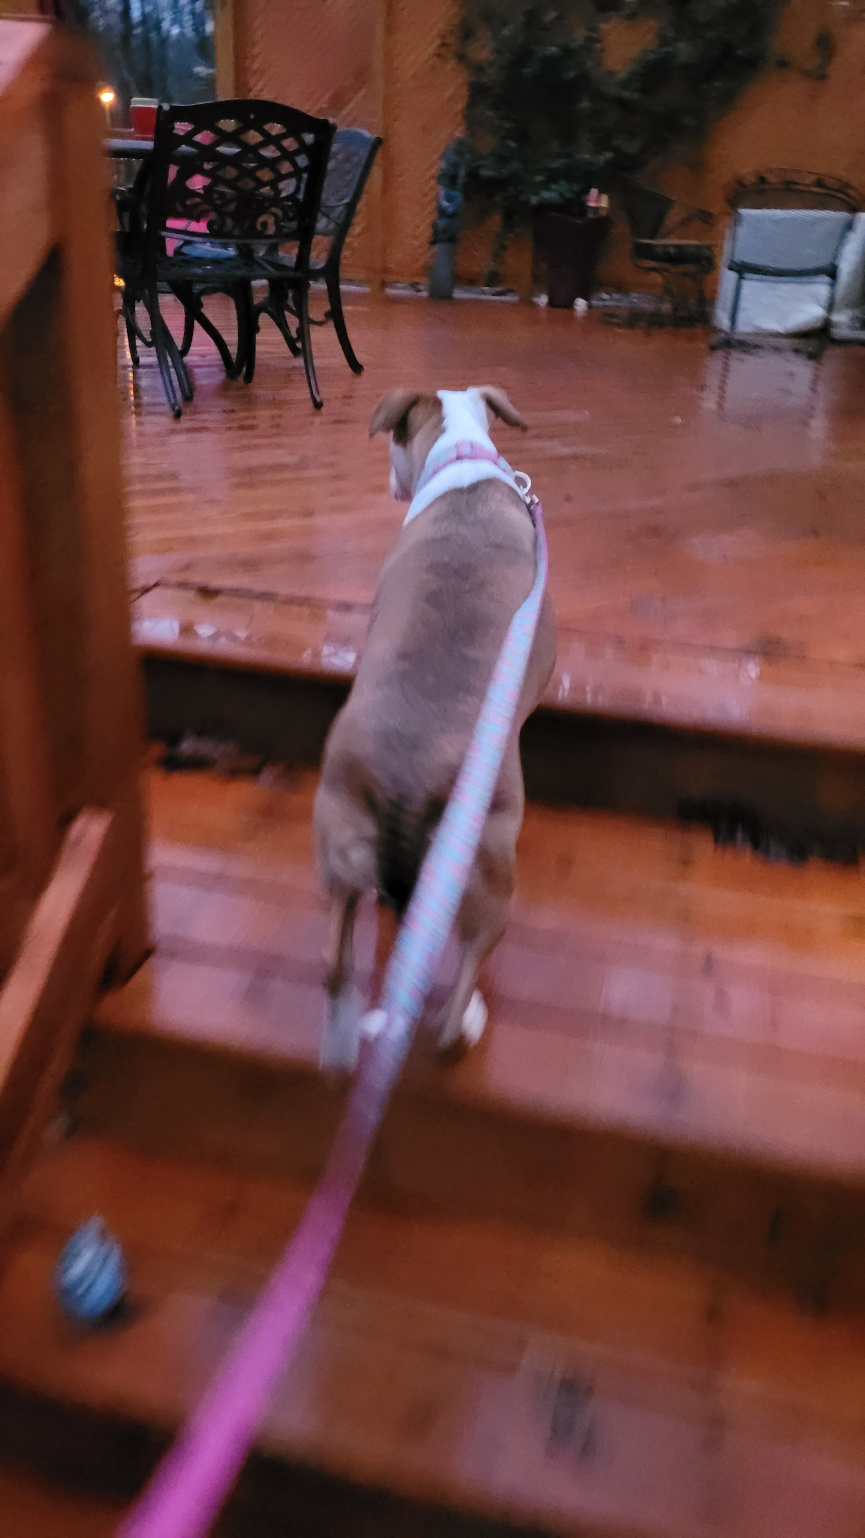 A dog walks up a deck stair